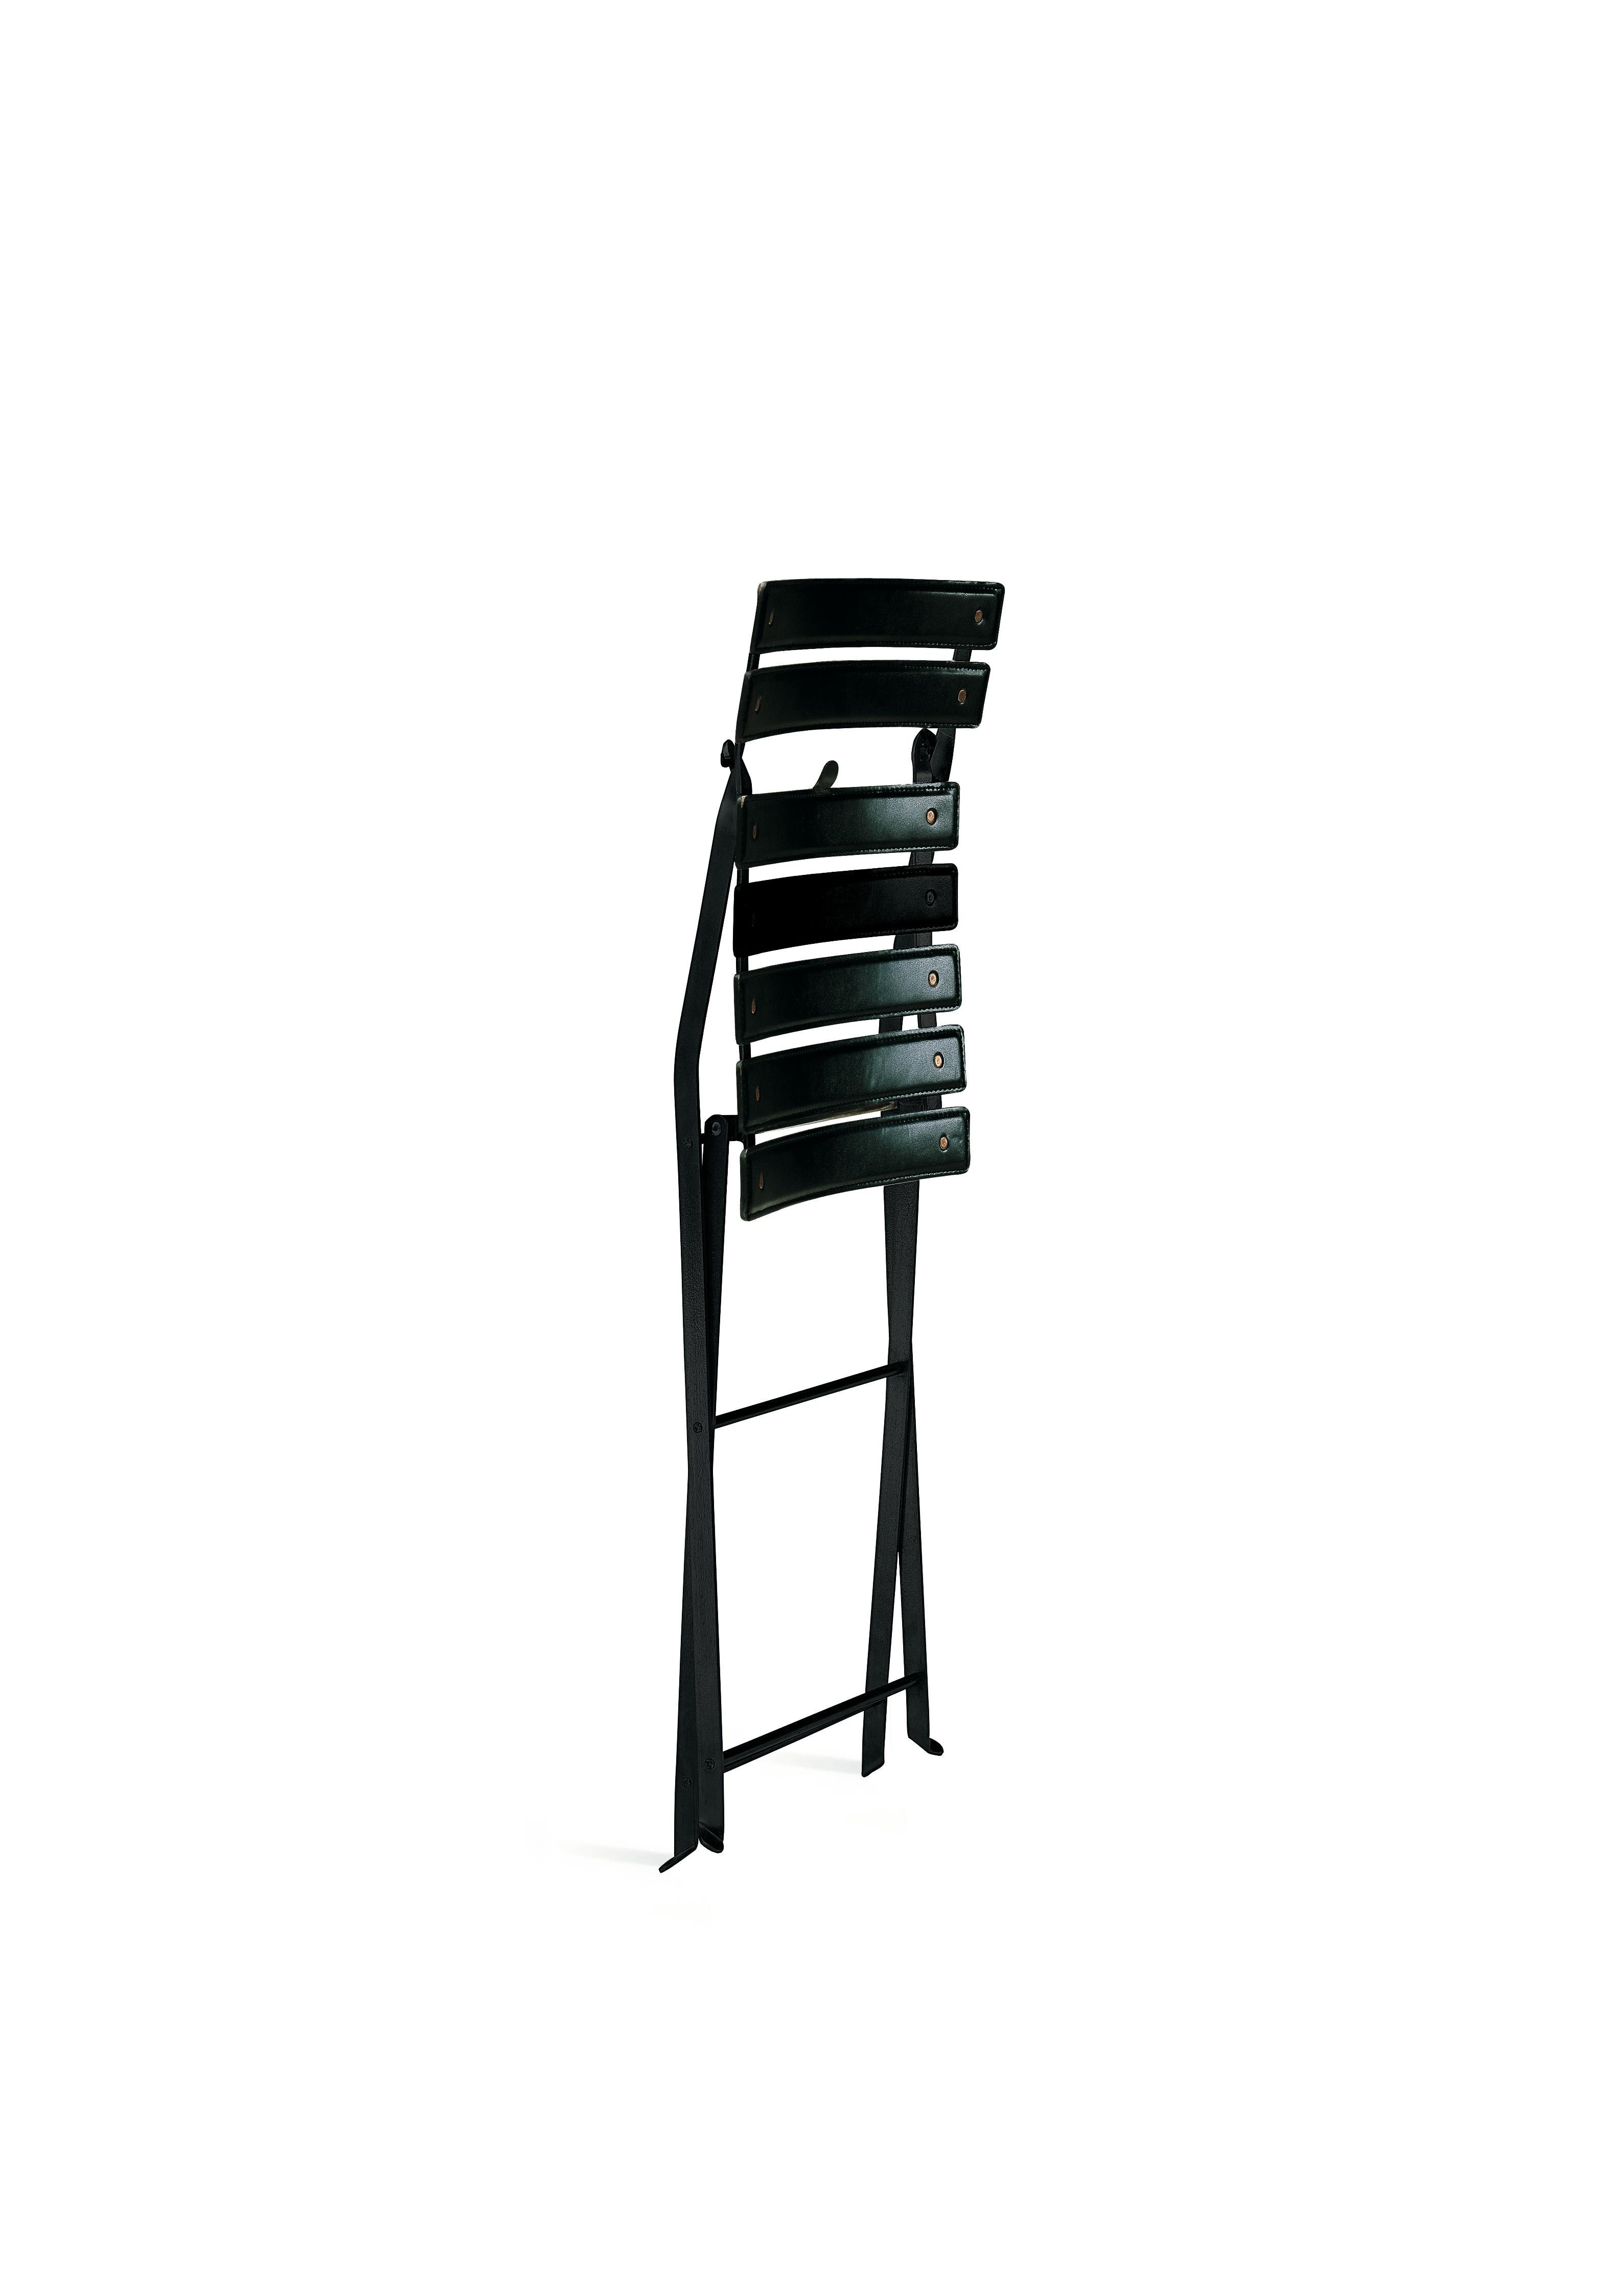 Zanotta Celestina, klappbarer Stuhl mit schwarz lackiertem Stahlgestell von Marco Zanuso

Gestell aus schwarz oder weiß lackiertem Stahl. Sitz und Rückenlehne aus Nylon, bezogen mit Rindsleder 95.

Zusätzliche Informationen:
MATERIAL: Stahl,